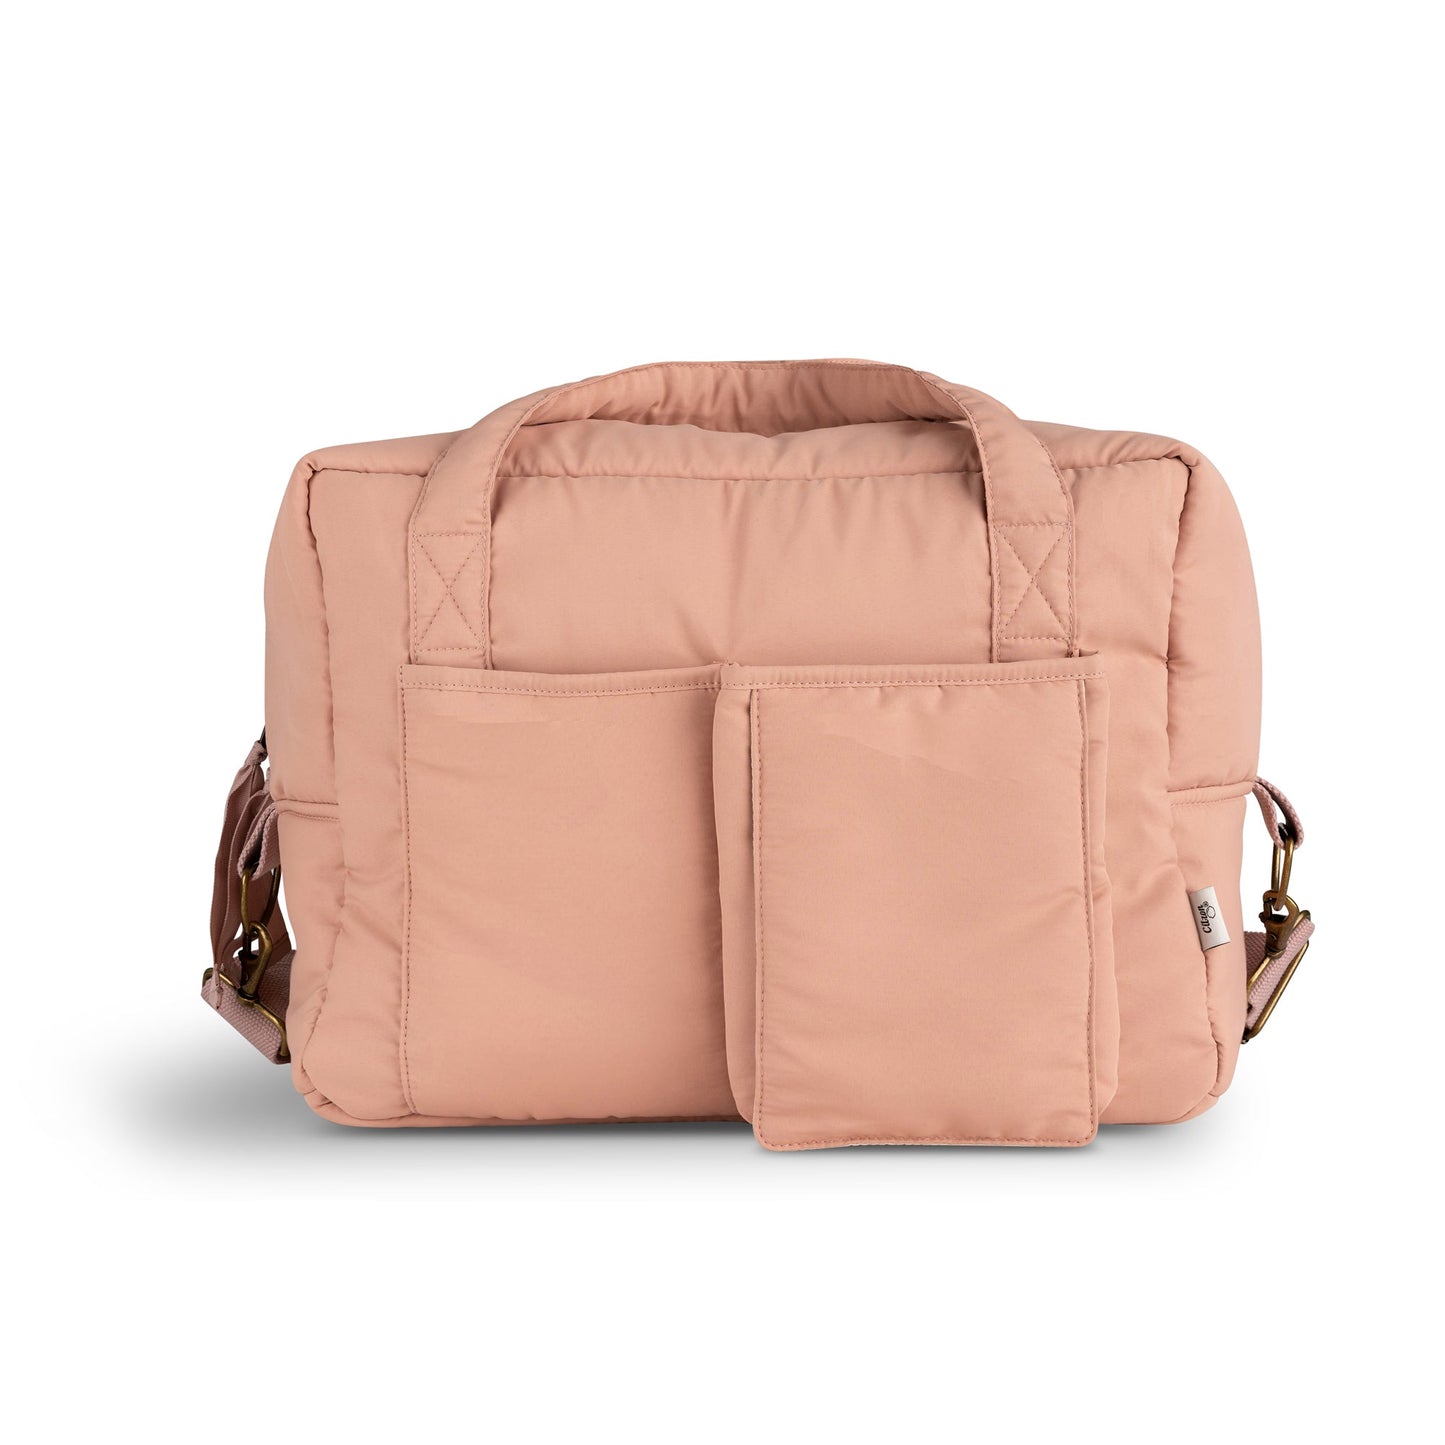 Multi-Purpose Bag - Blush Pink